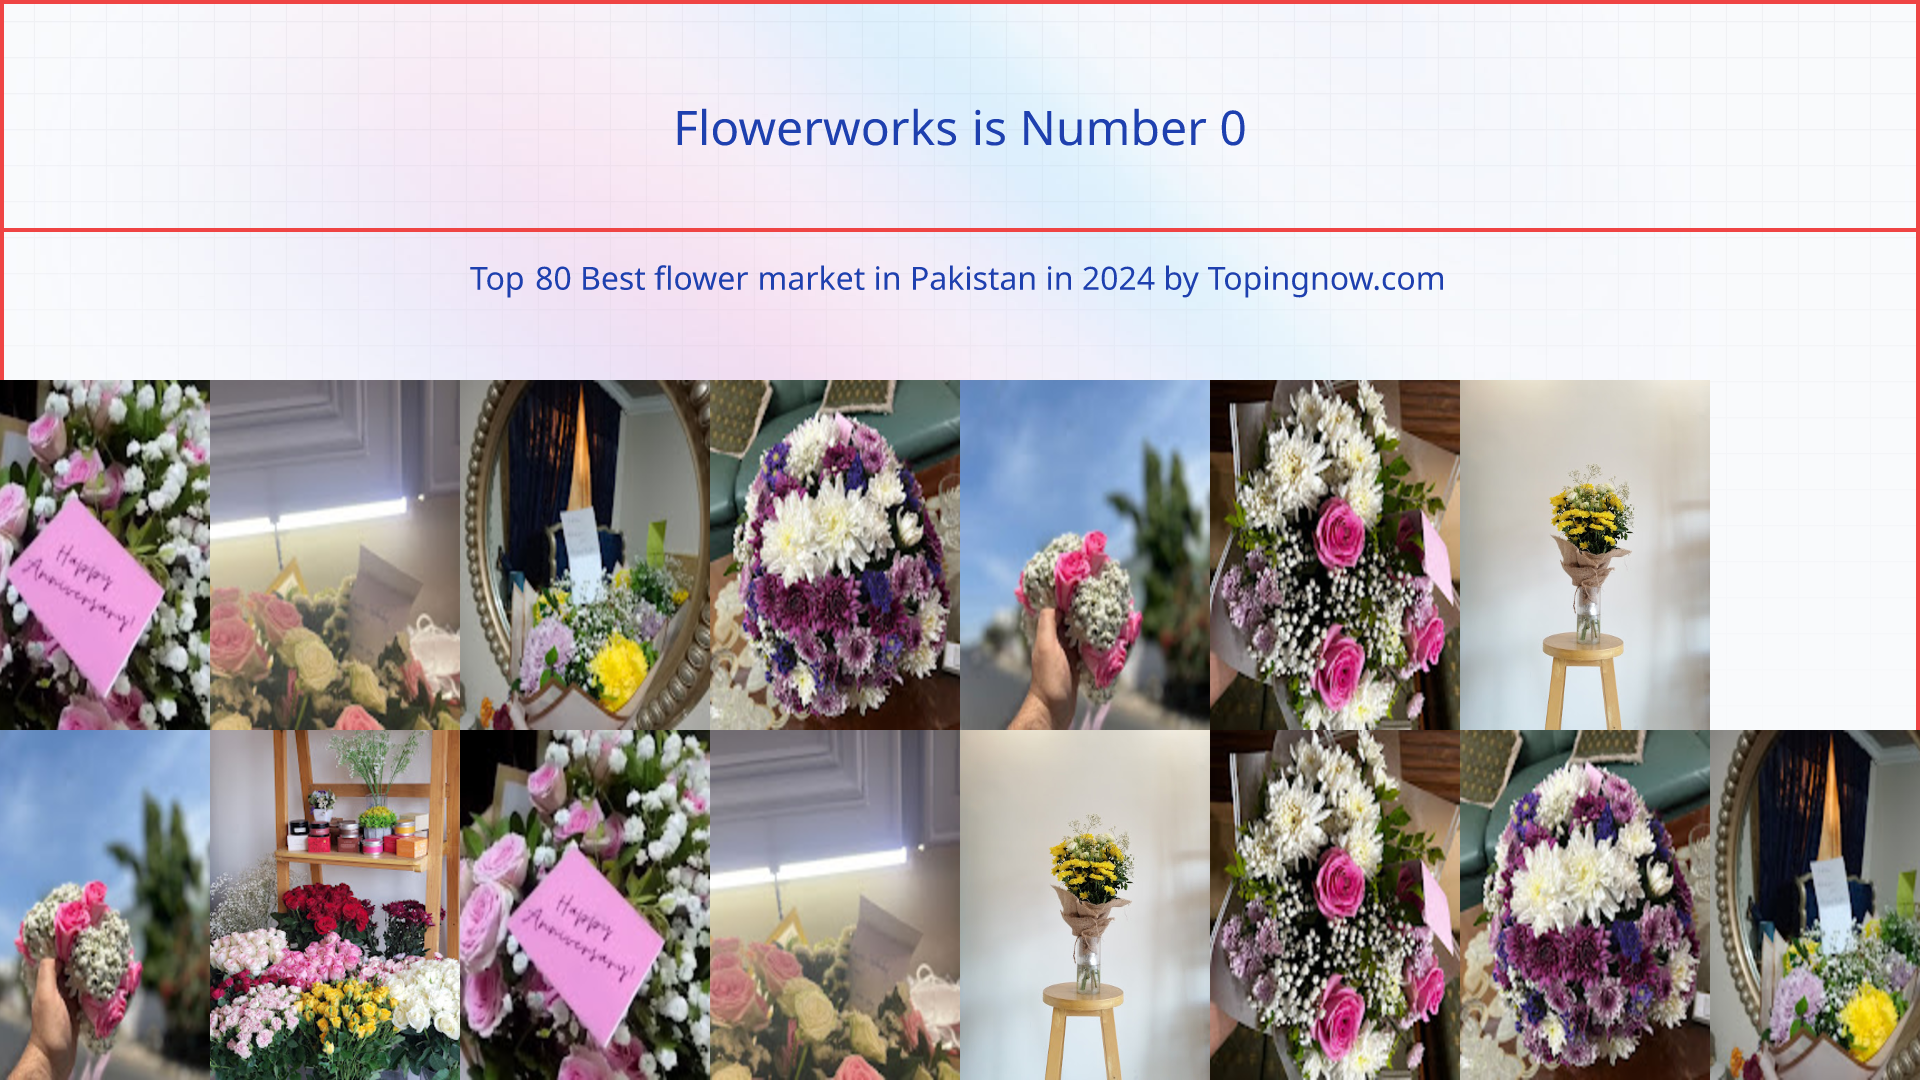 Flowerworks: Top 80 Best flower market in Pakistan in 2024